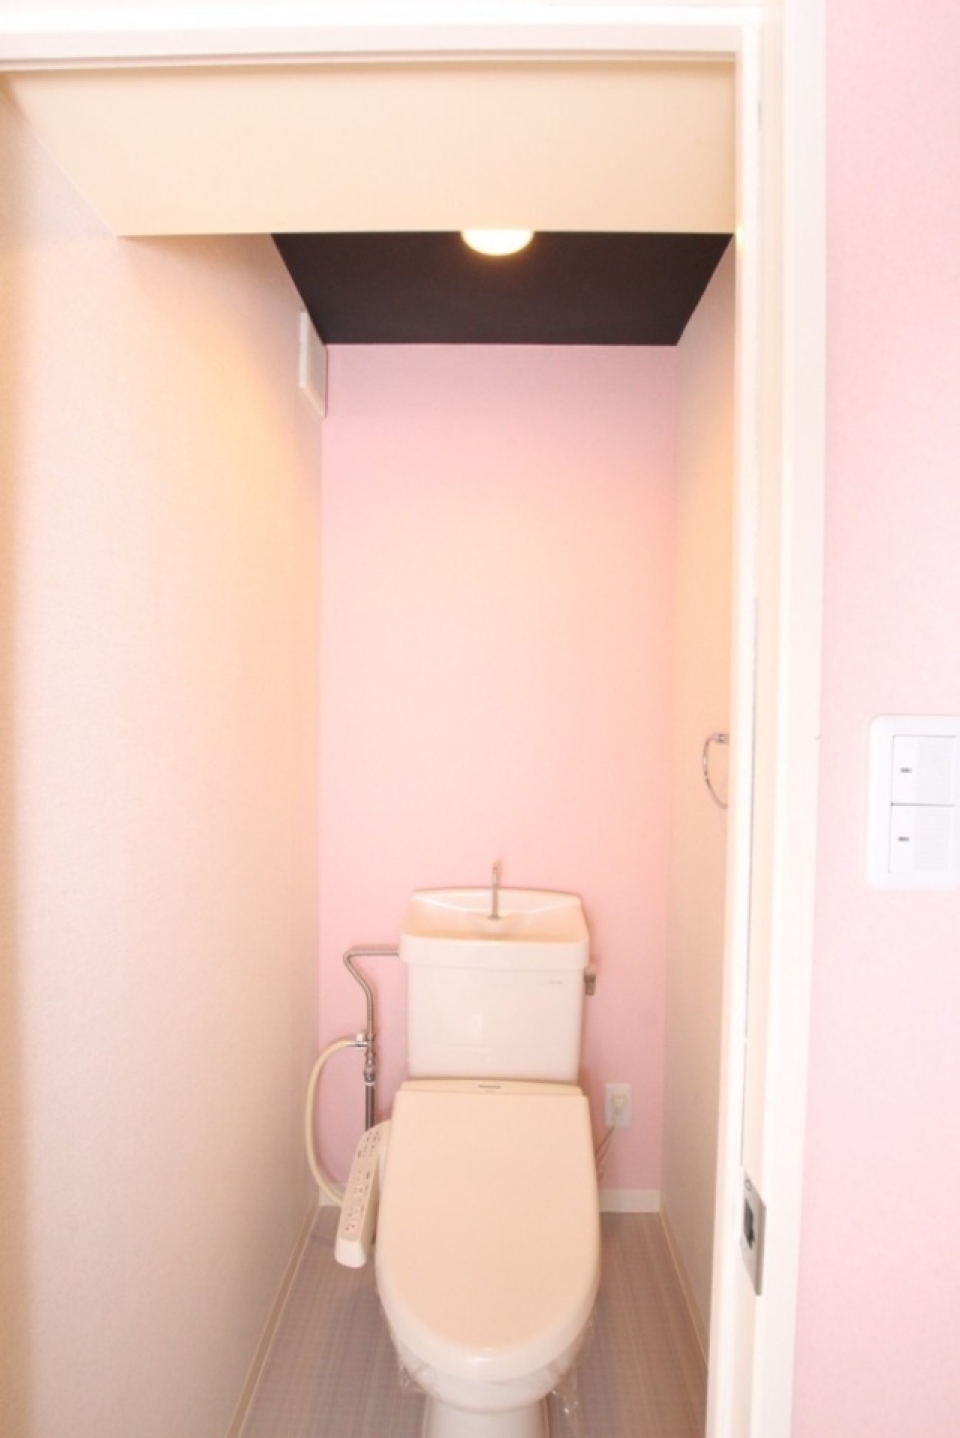 更にトイレ内も同様PINK色。